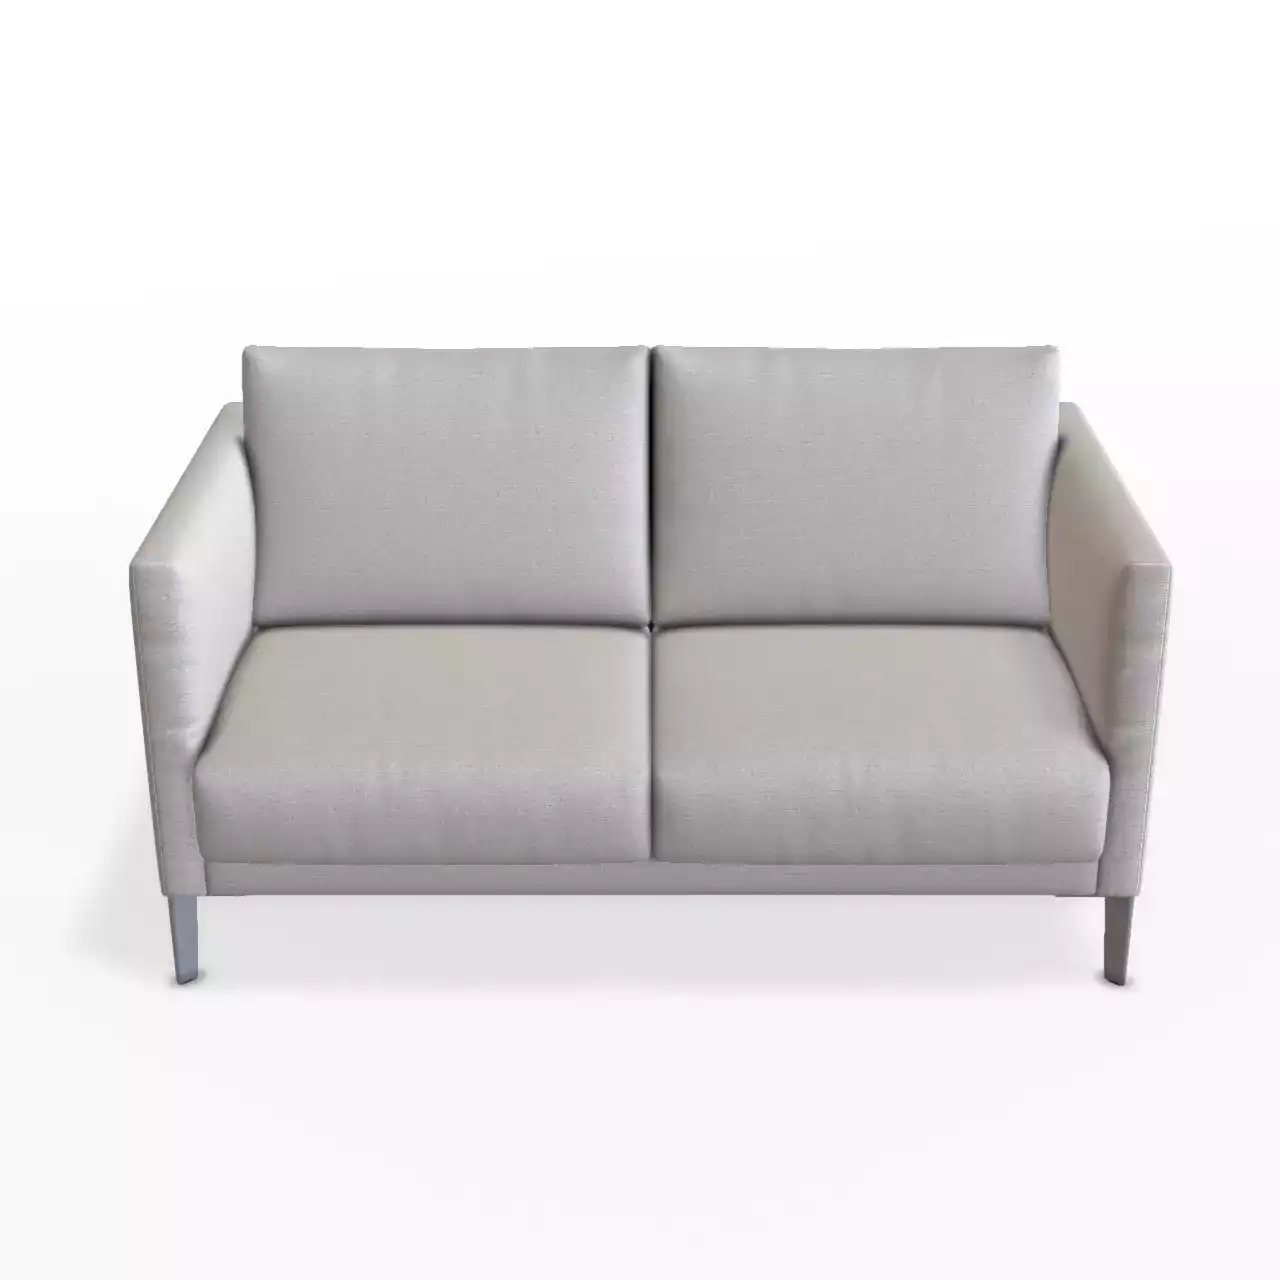 2 sitzer sofa in weiß gauem stoff, optional mit klappbarer Armlehne